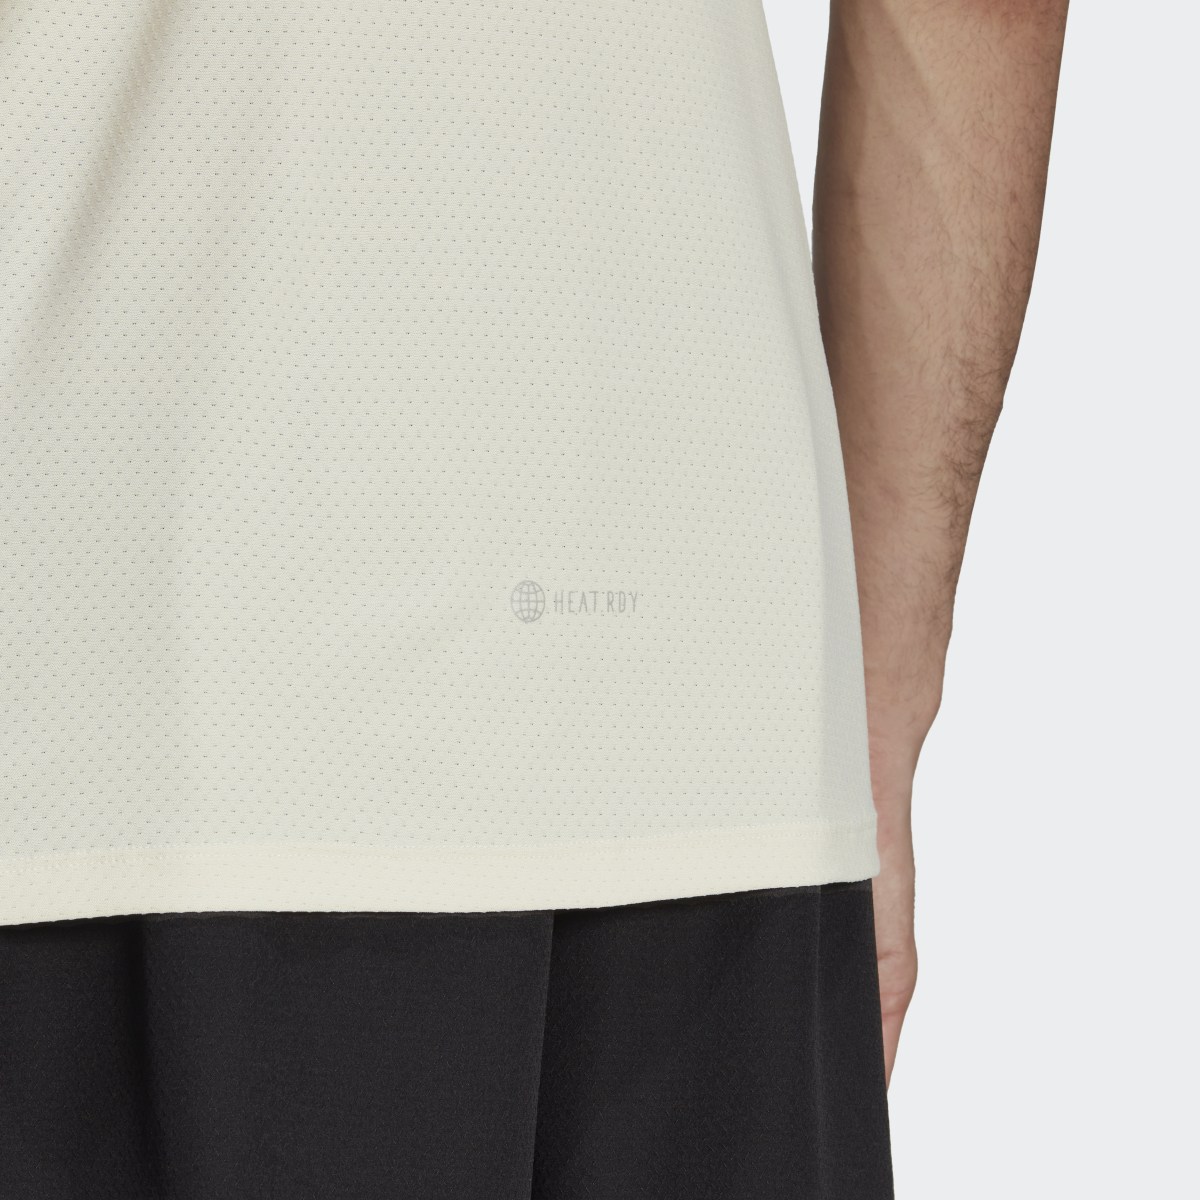 Adidas Camiseta Designed 4 Training HEAT.RDY HIIT. 7